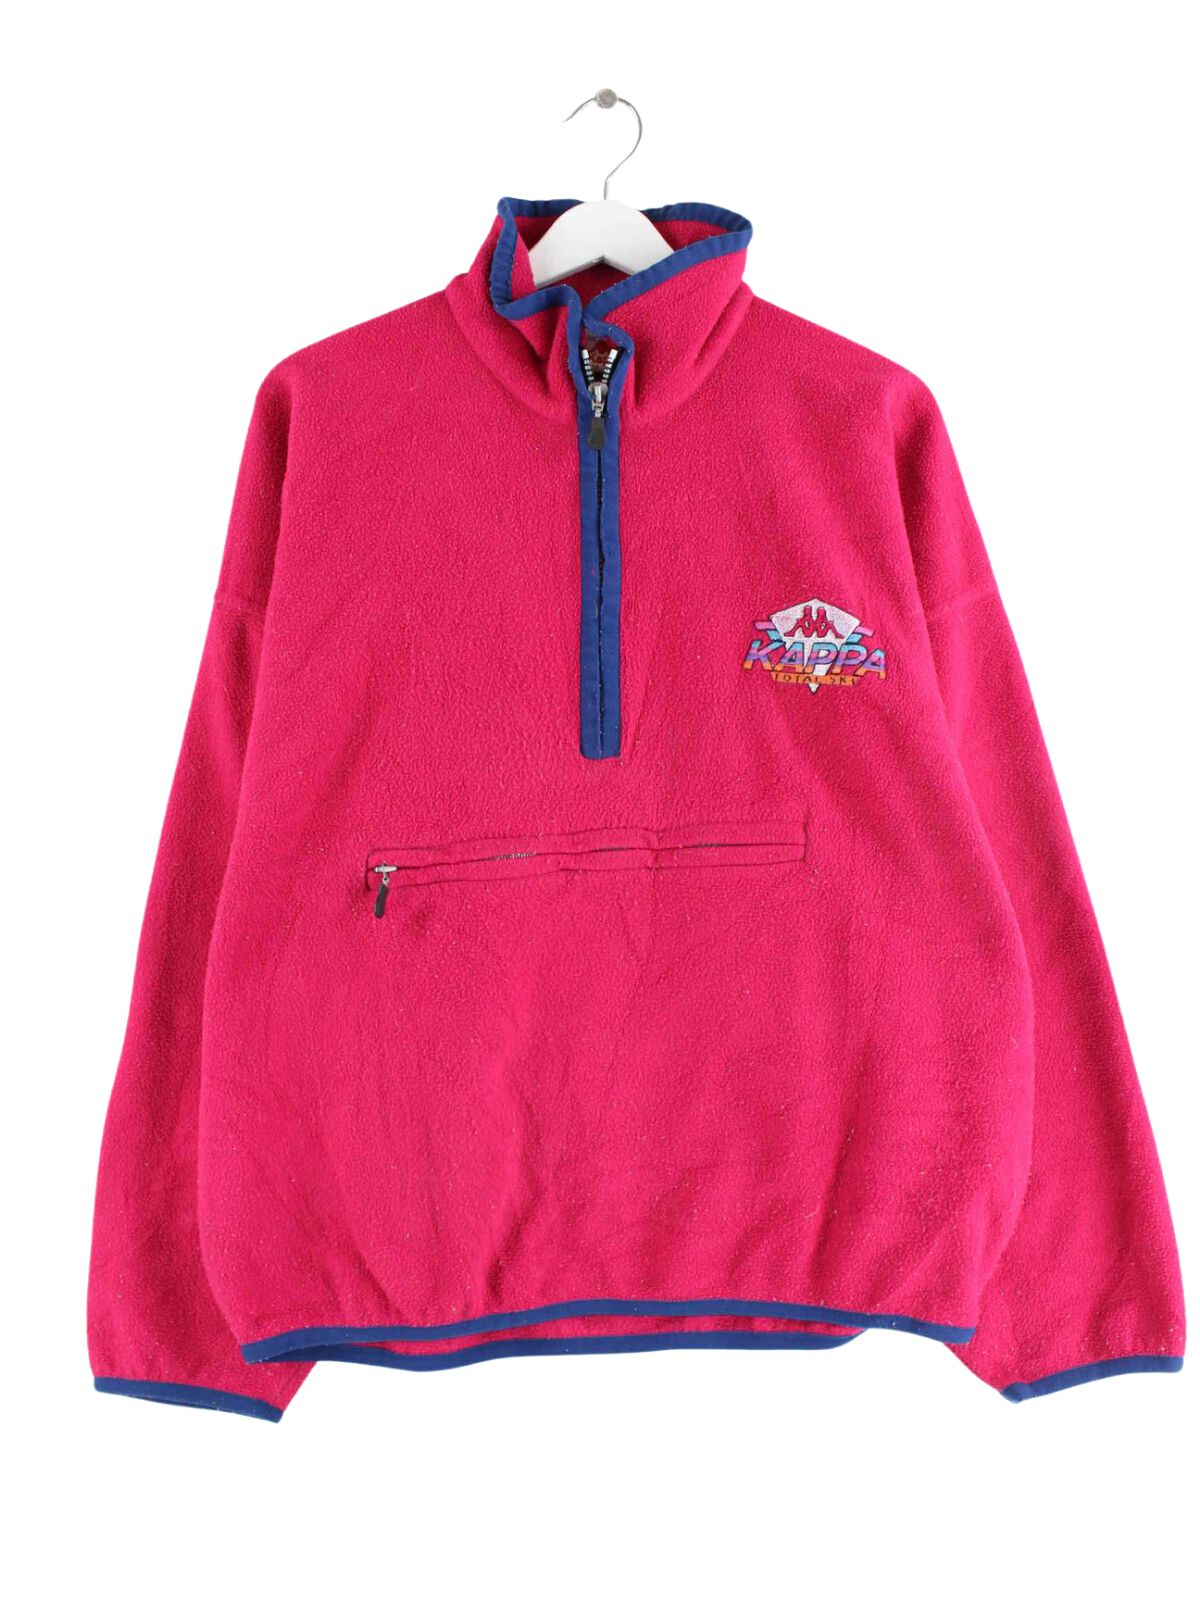 Kappa 80s Vintage Half Zip Fleece Sweater Pink M (front image)